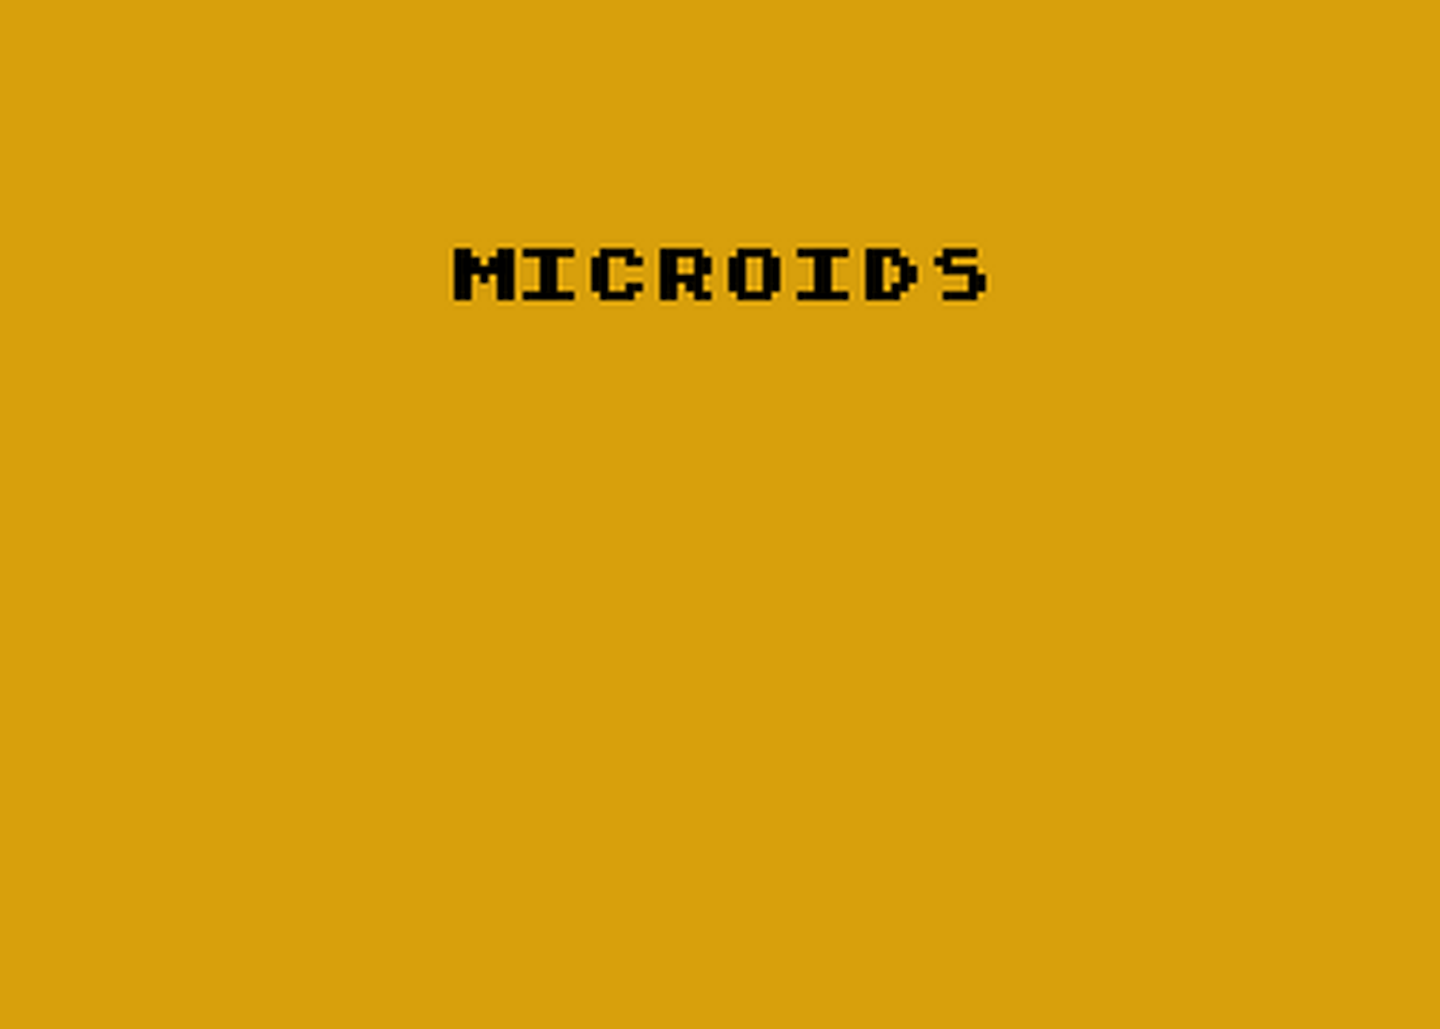 Atari GameBase Microids Antic 1983